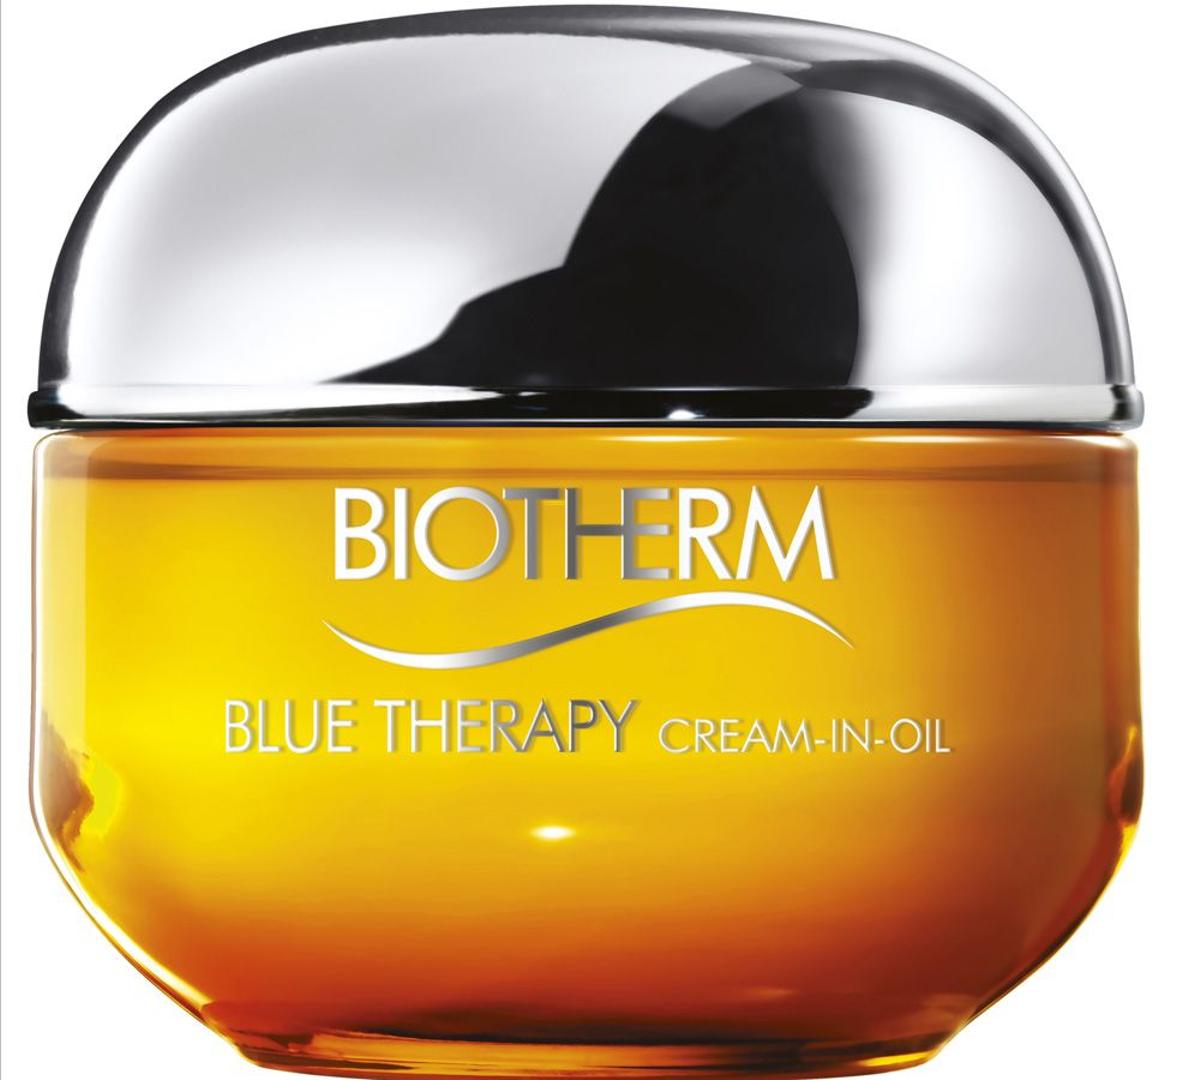 Blue Therapy Cream-In-Oil, de Biotherm